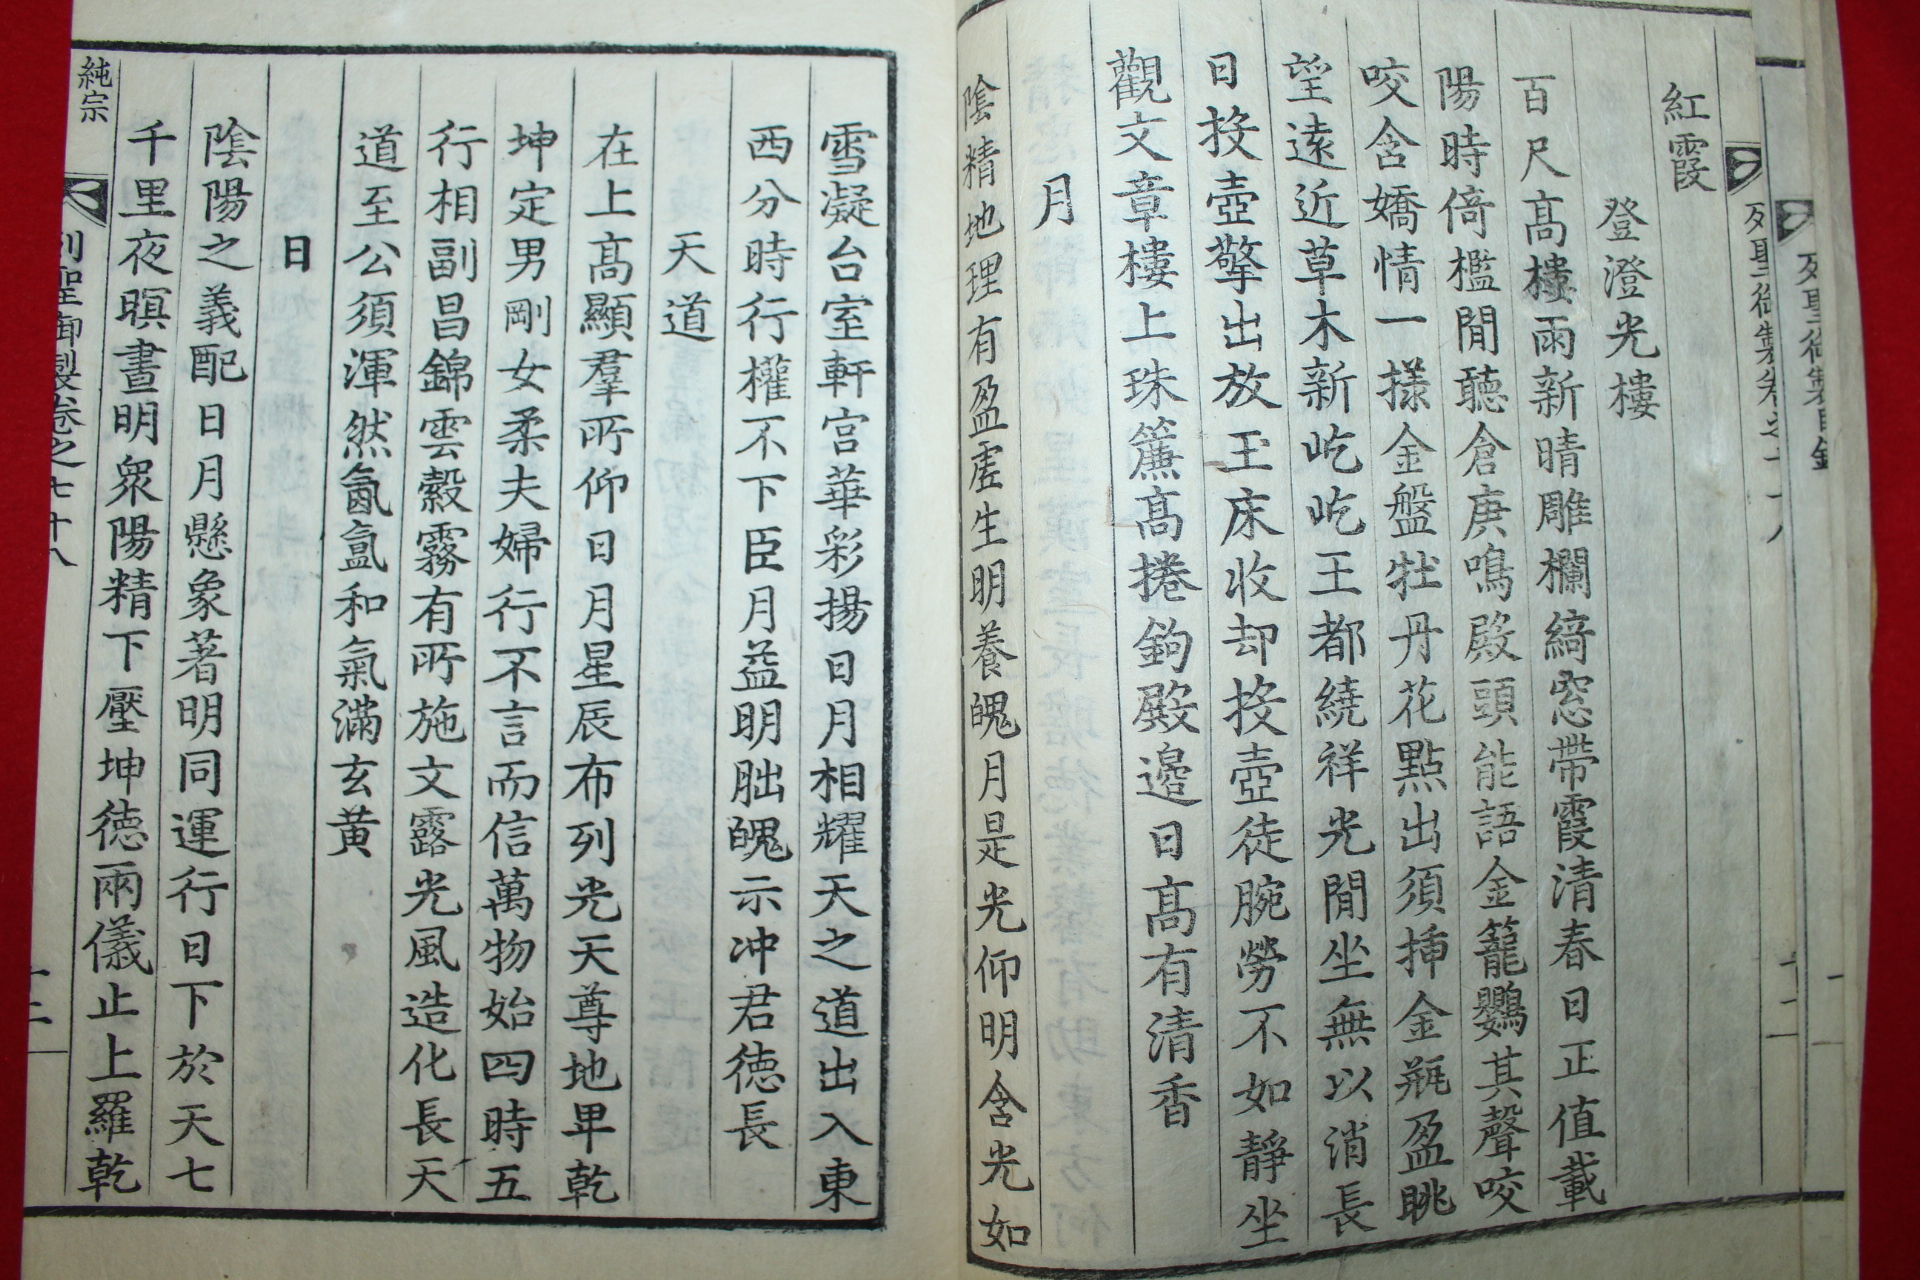 조선시대 금속활자본(顯宗實錄字) 열성어제(列聖御製)순종어제 12권6책완질